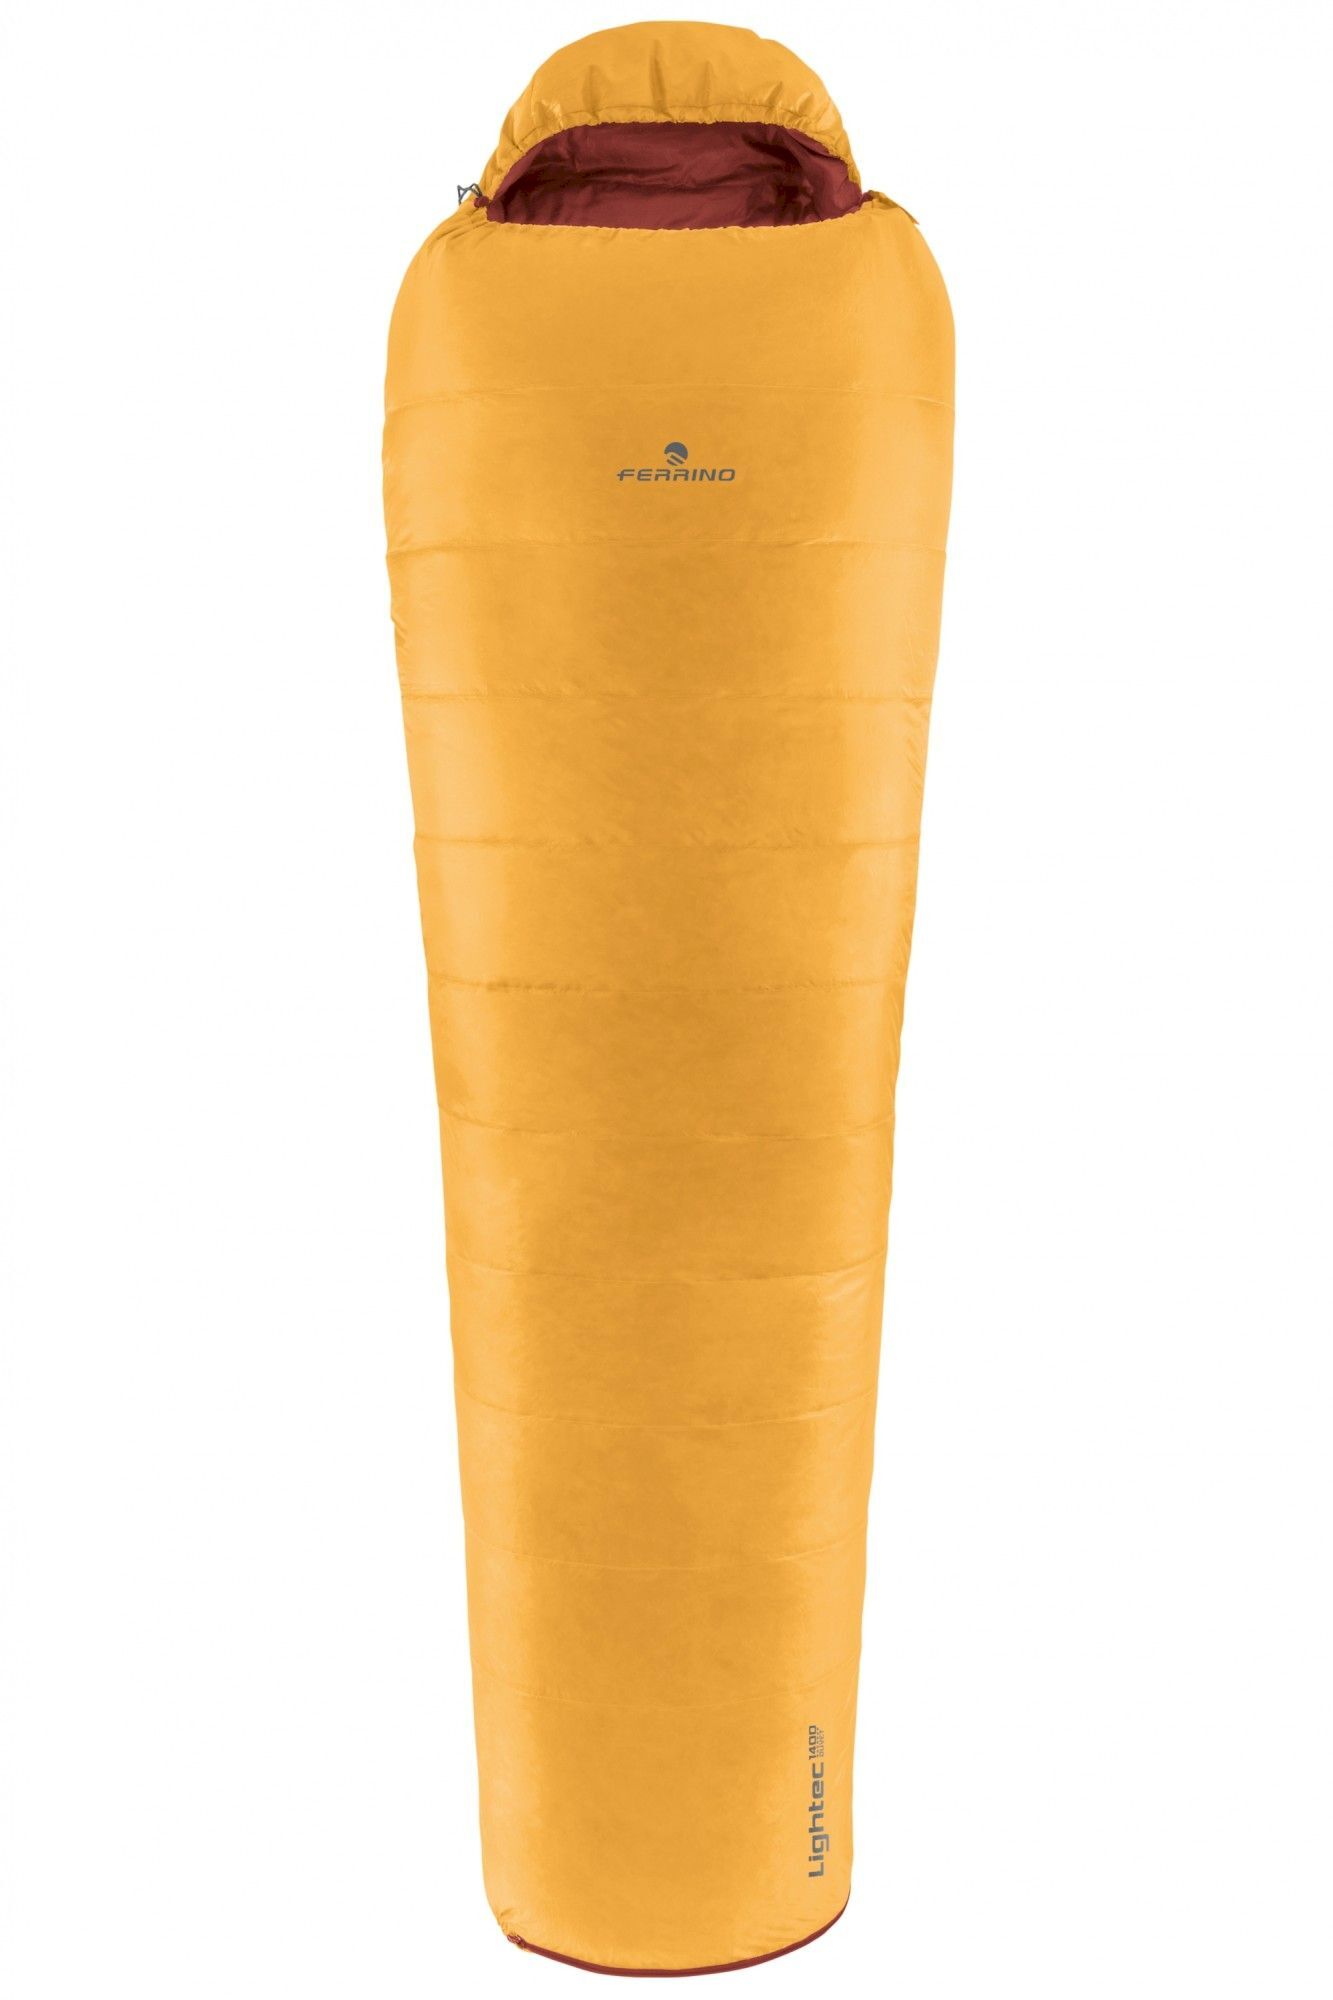 Ferrino Lightech 1400 Duvet - Sleeping bag